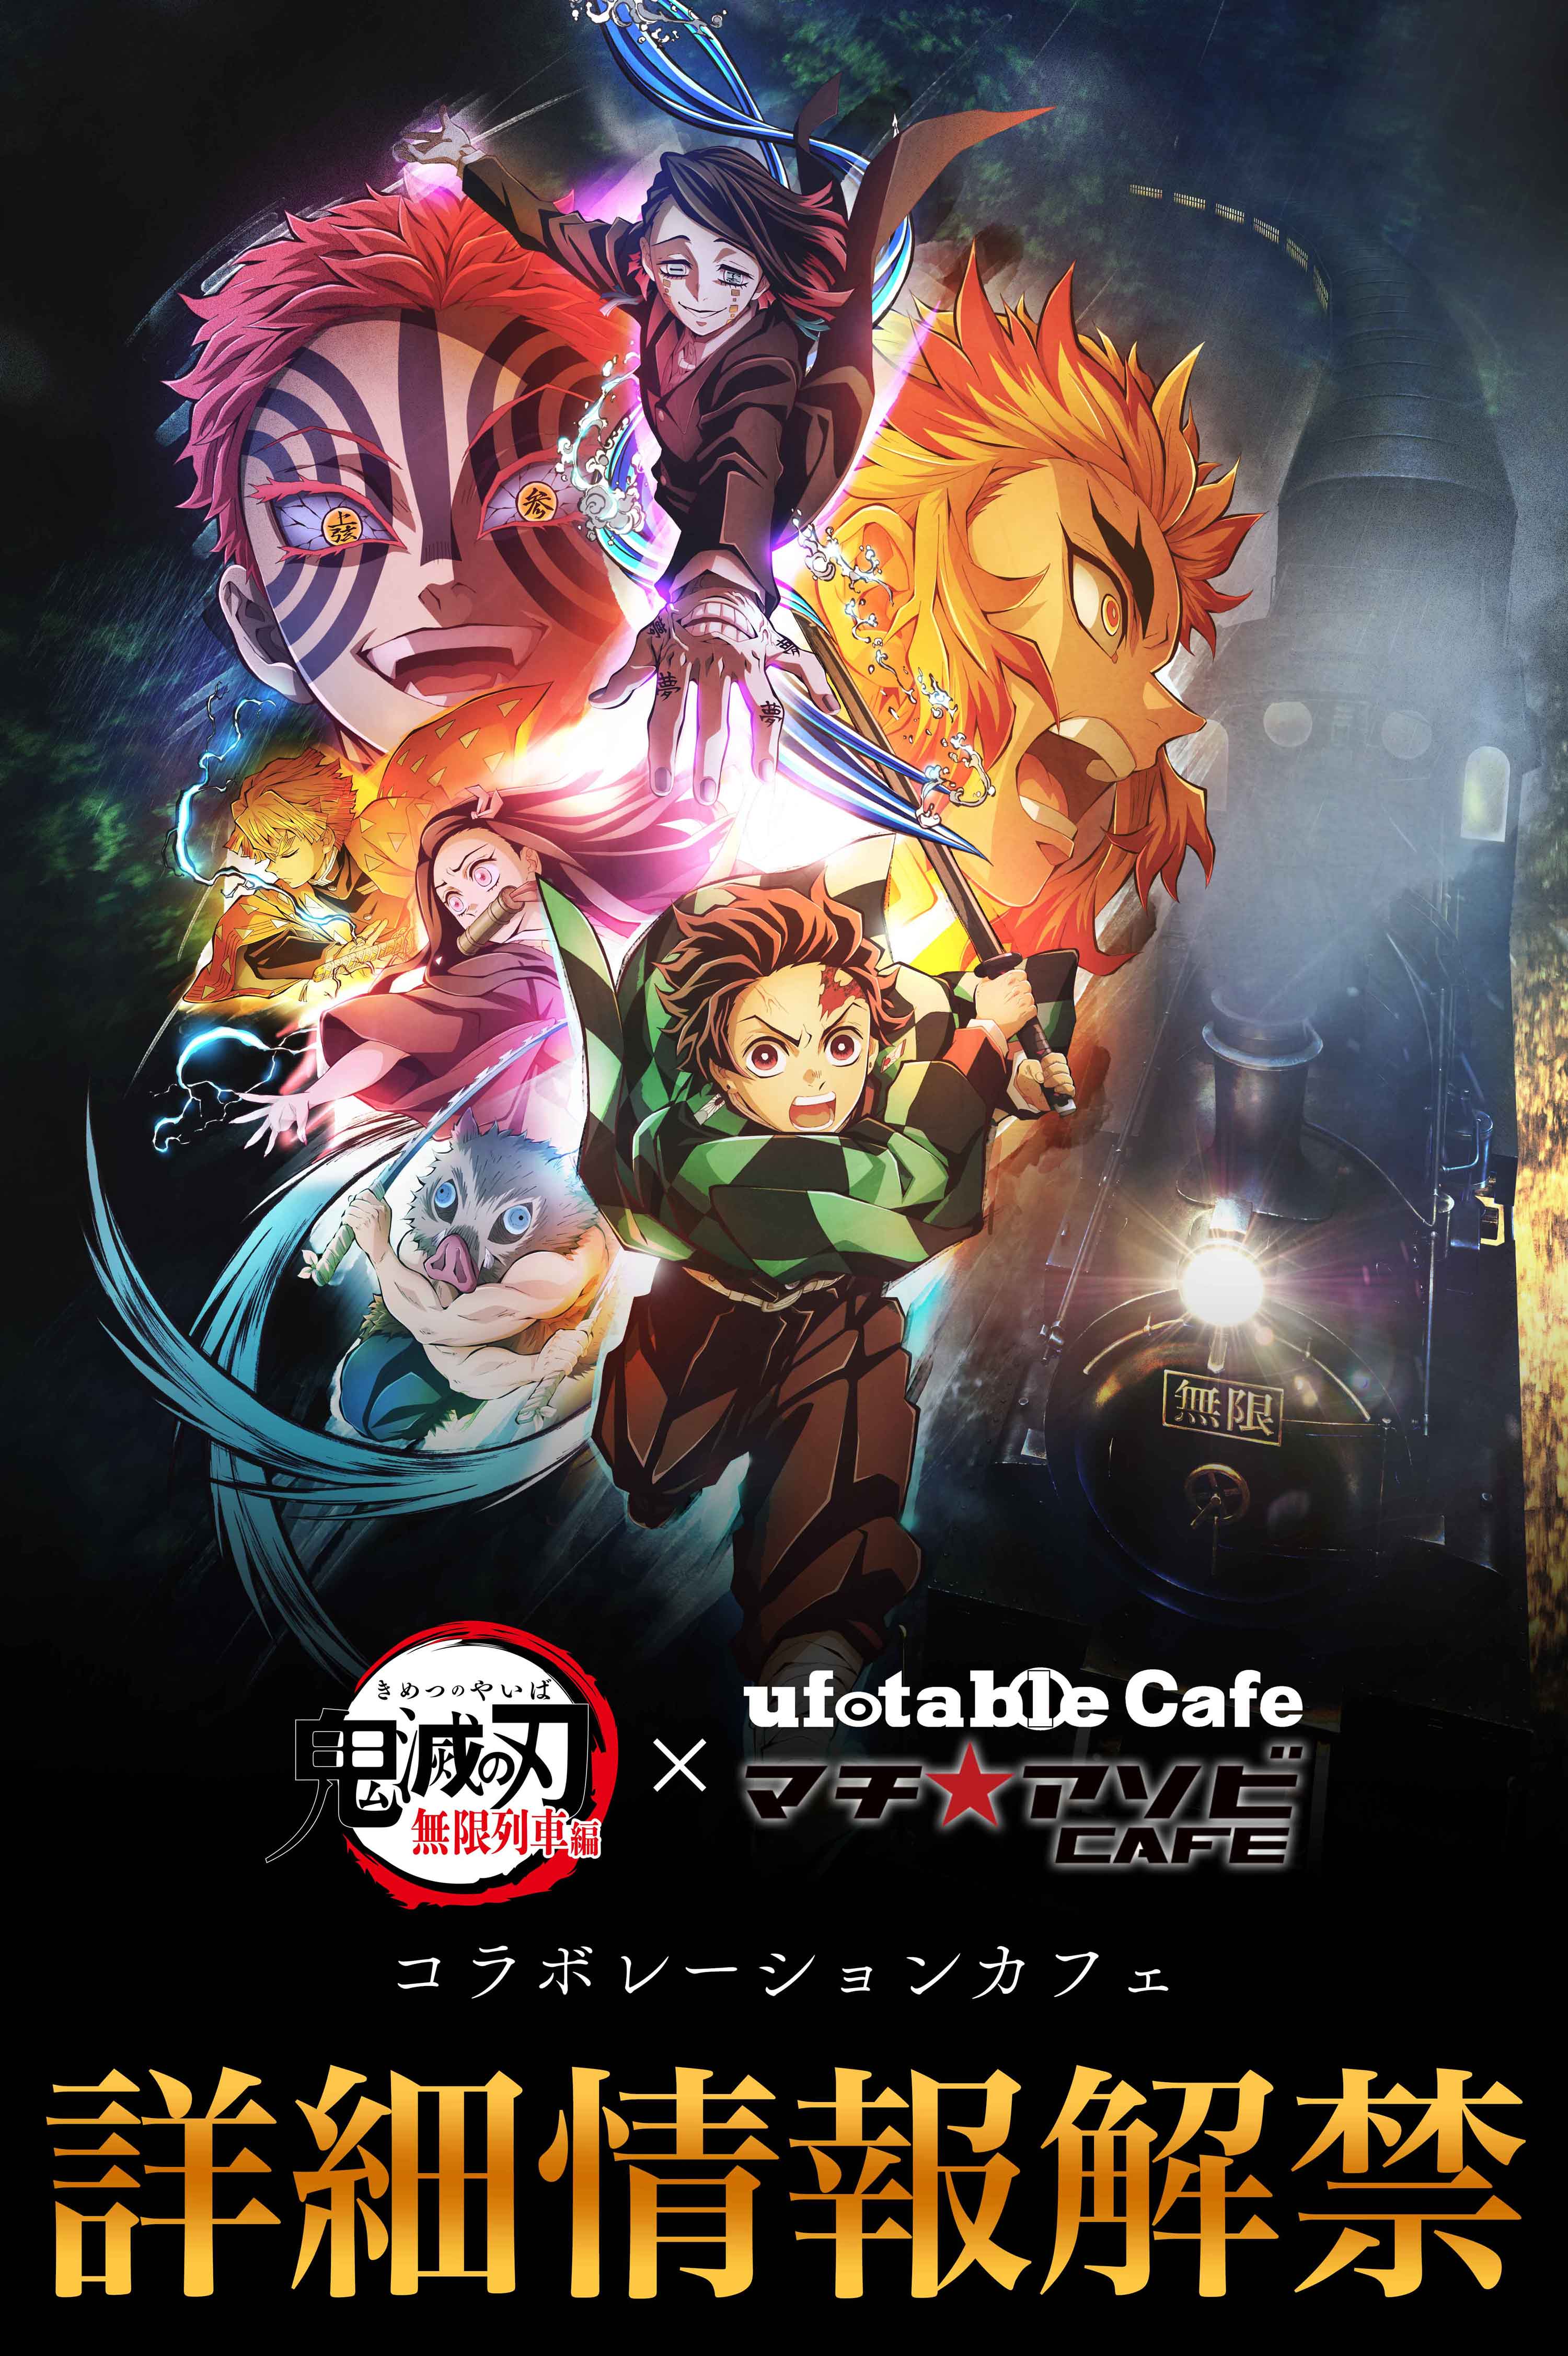 【東京】ufotableCafeTOKYO 11/12(金)  テレビアニメ「鬼滅の刃」無限列車編 コラボレーションカフェ